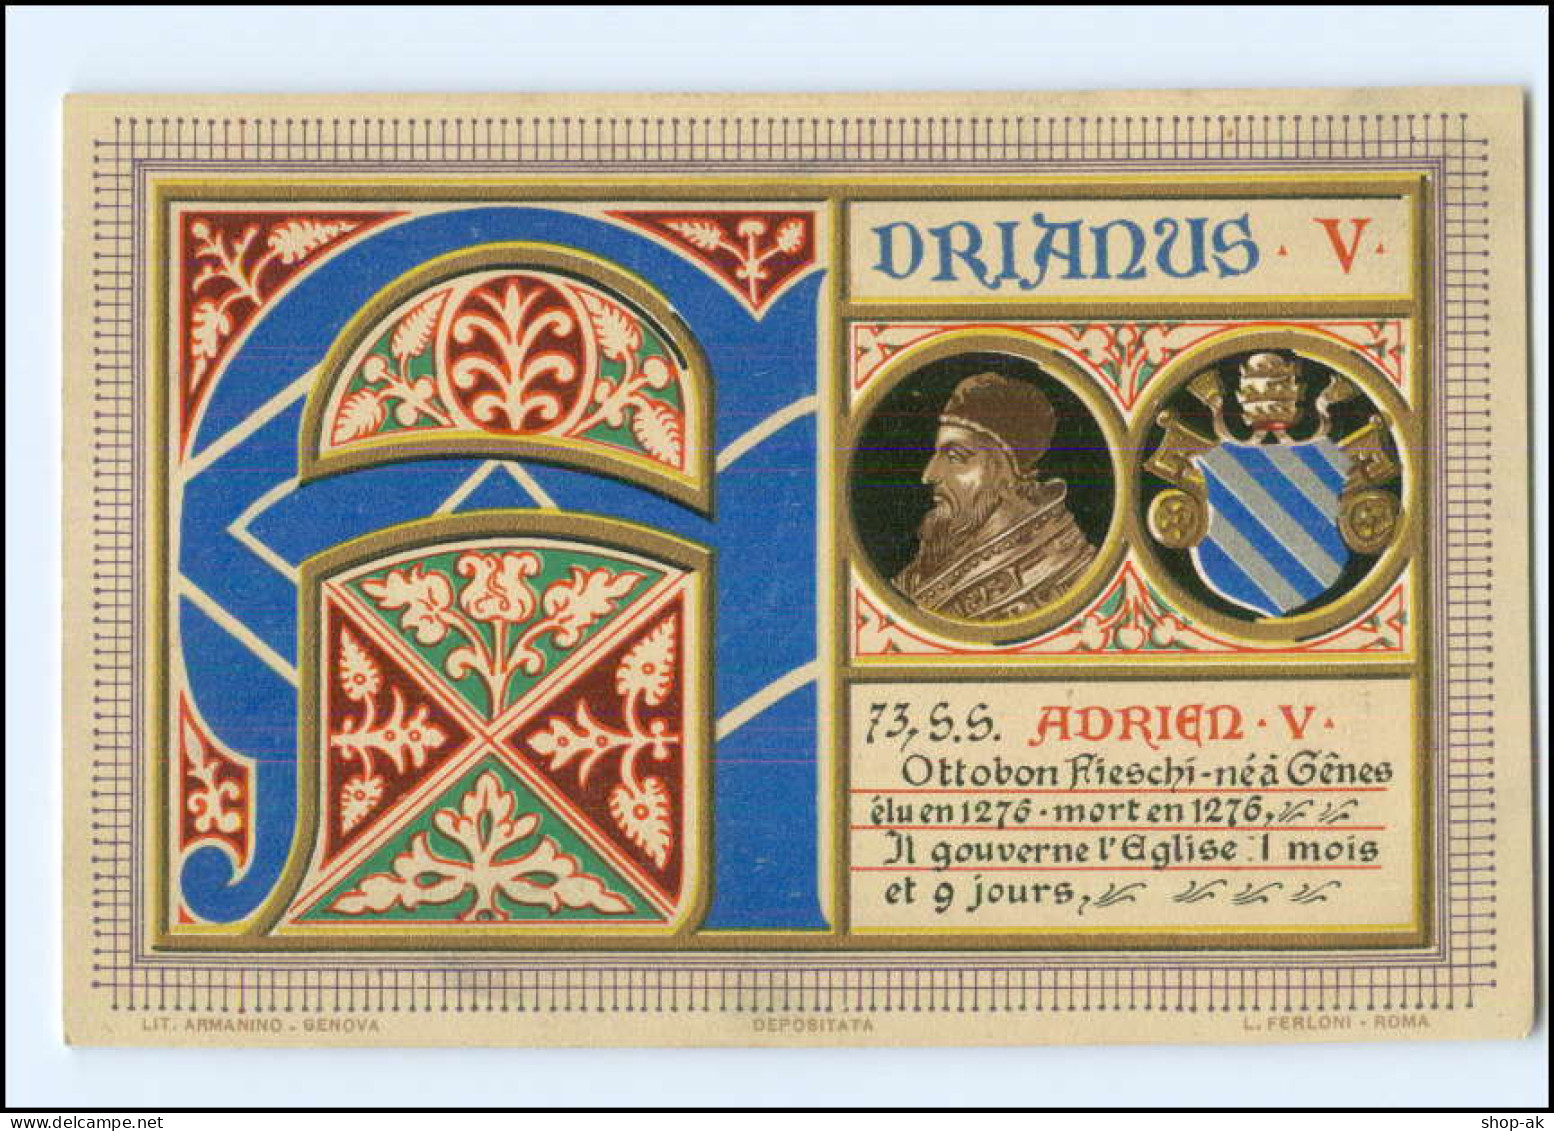 S2278/ Vatikan Papst Adrian V Litho AK  1903  Karte Nr. 73 Vatican  - Vatikanstadt